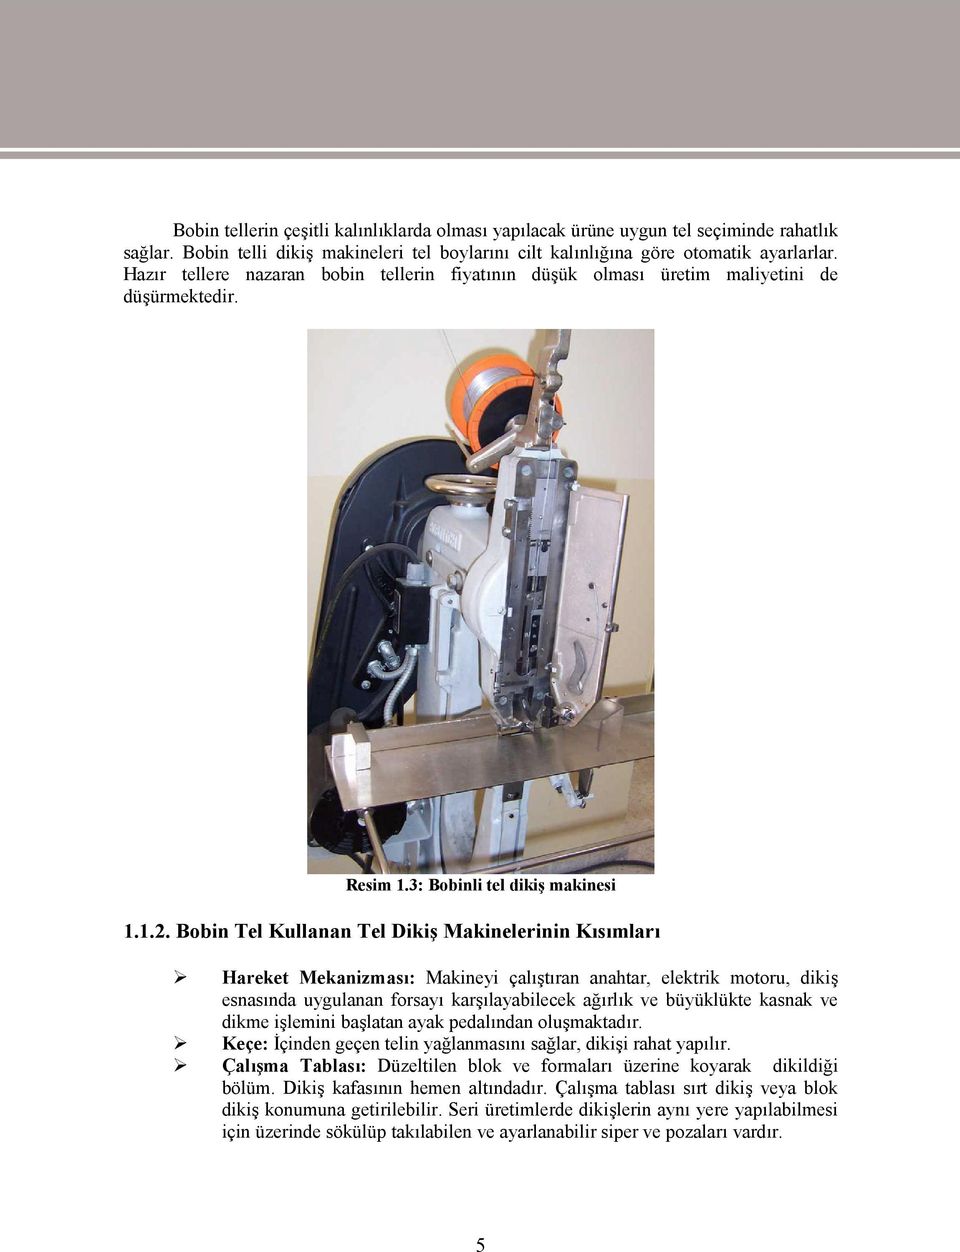 Bobin Tel Kullanan Tel Dikiş Makinelerinin Kısımları Hareket Mekanizması: Makineyi çalıştıran anahtar, elektrik motoru, dikiş esnasında uygulanan forsayı karşılayabilecek ağırlık ve büyüklükte kasnak